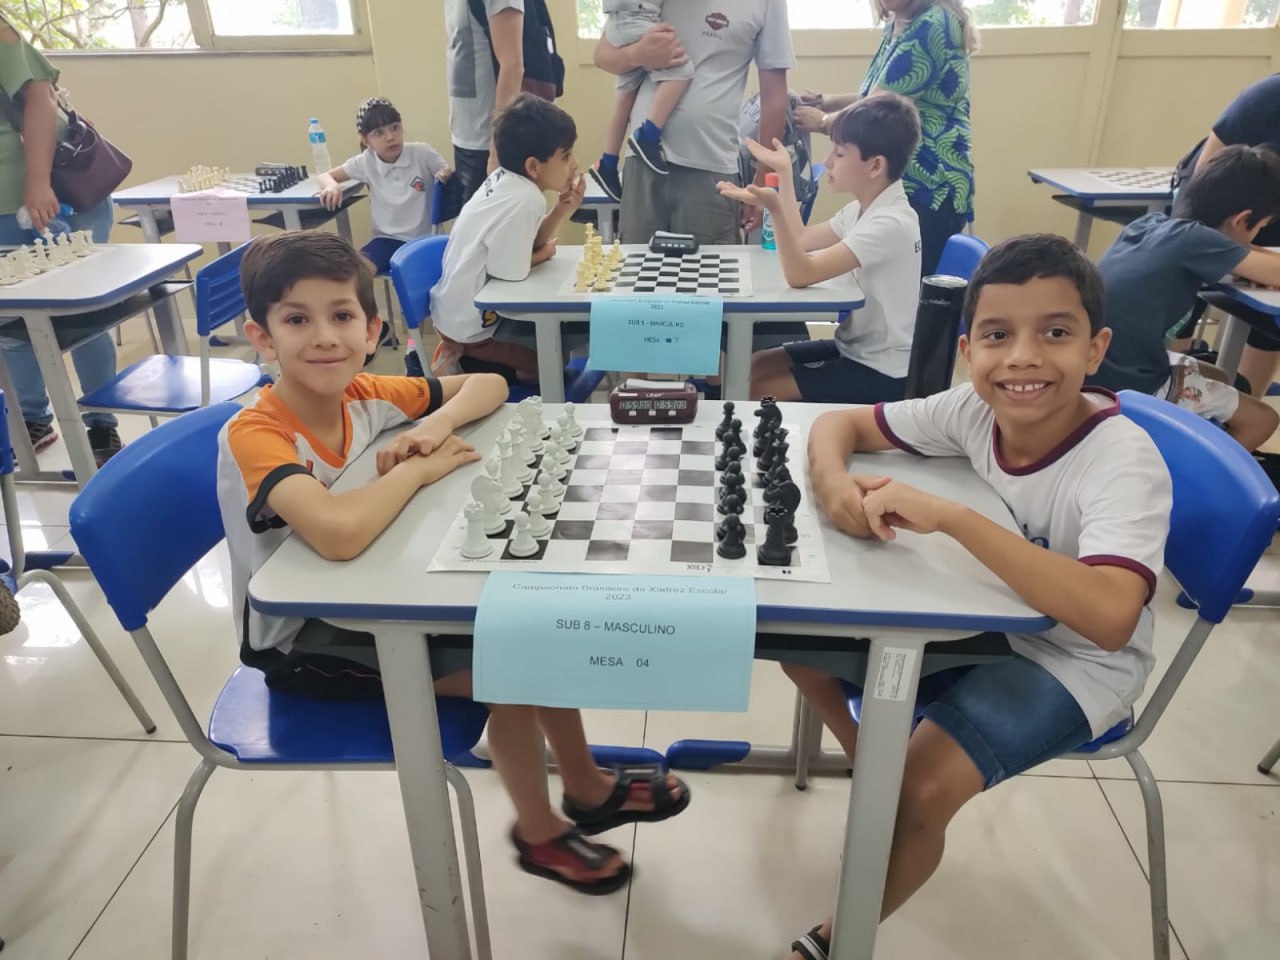 Campeonato de xadrez em BH: 4 eventos para todos os níveis!